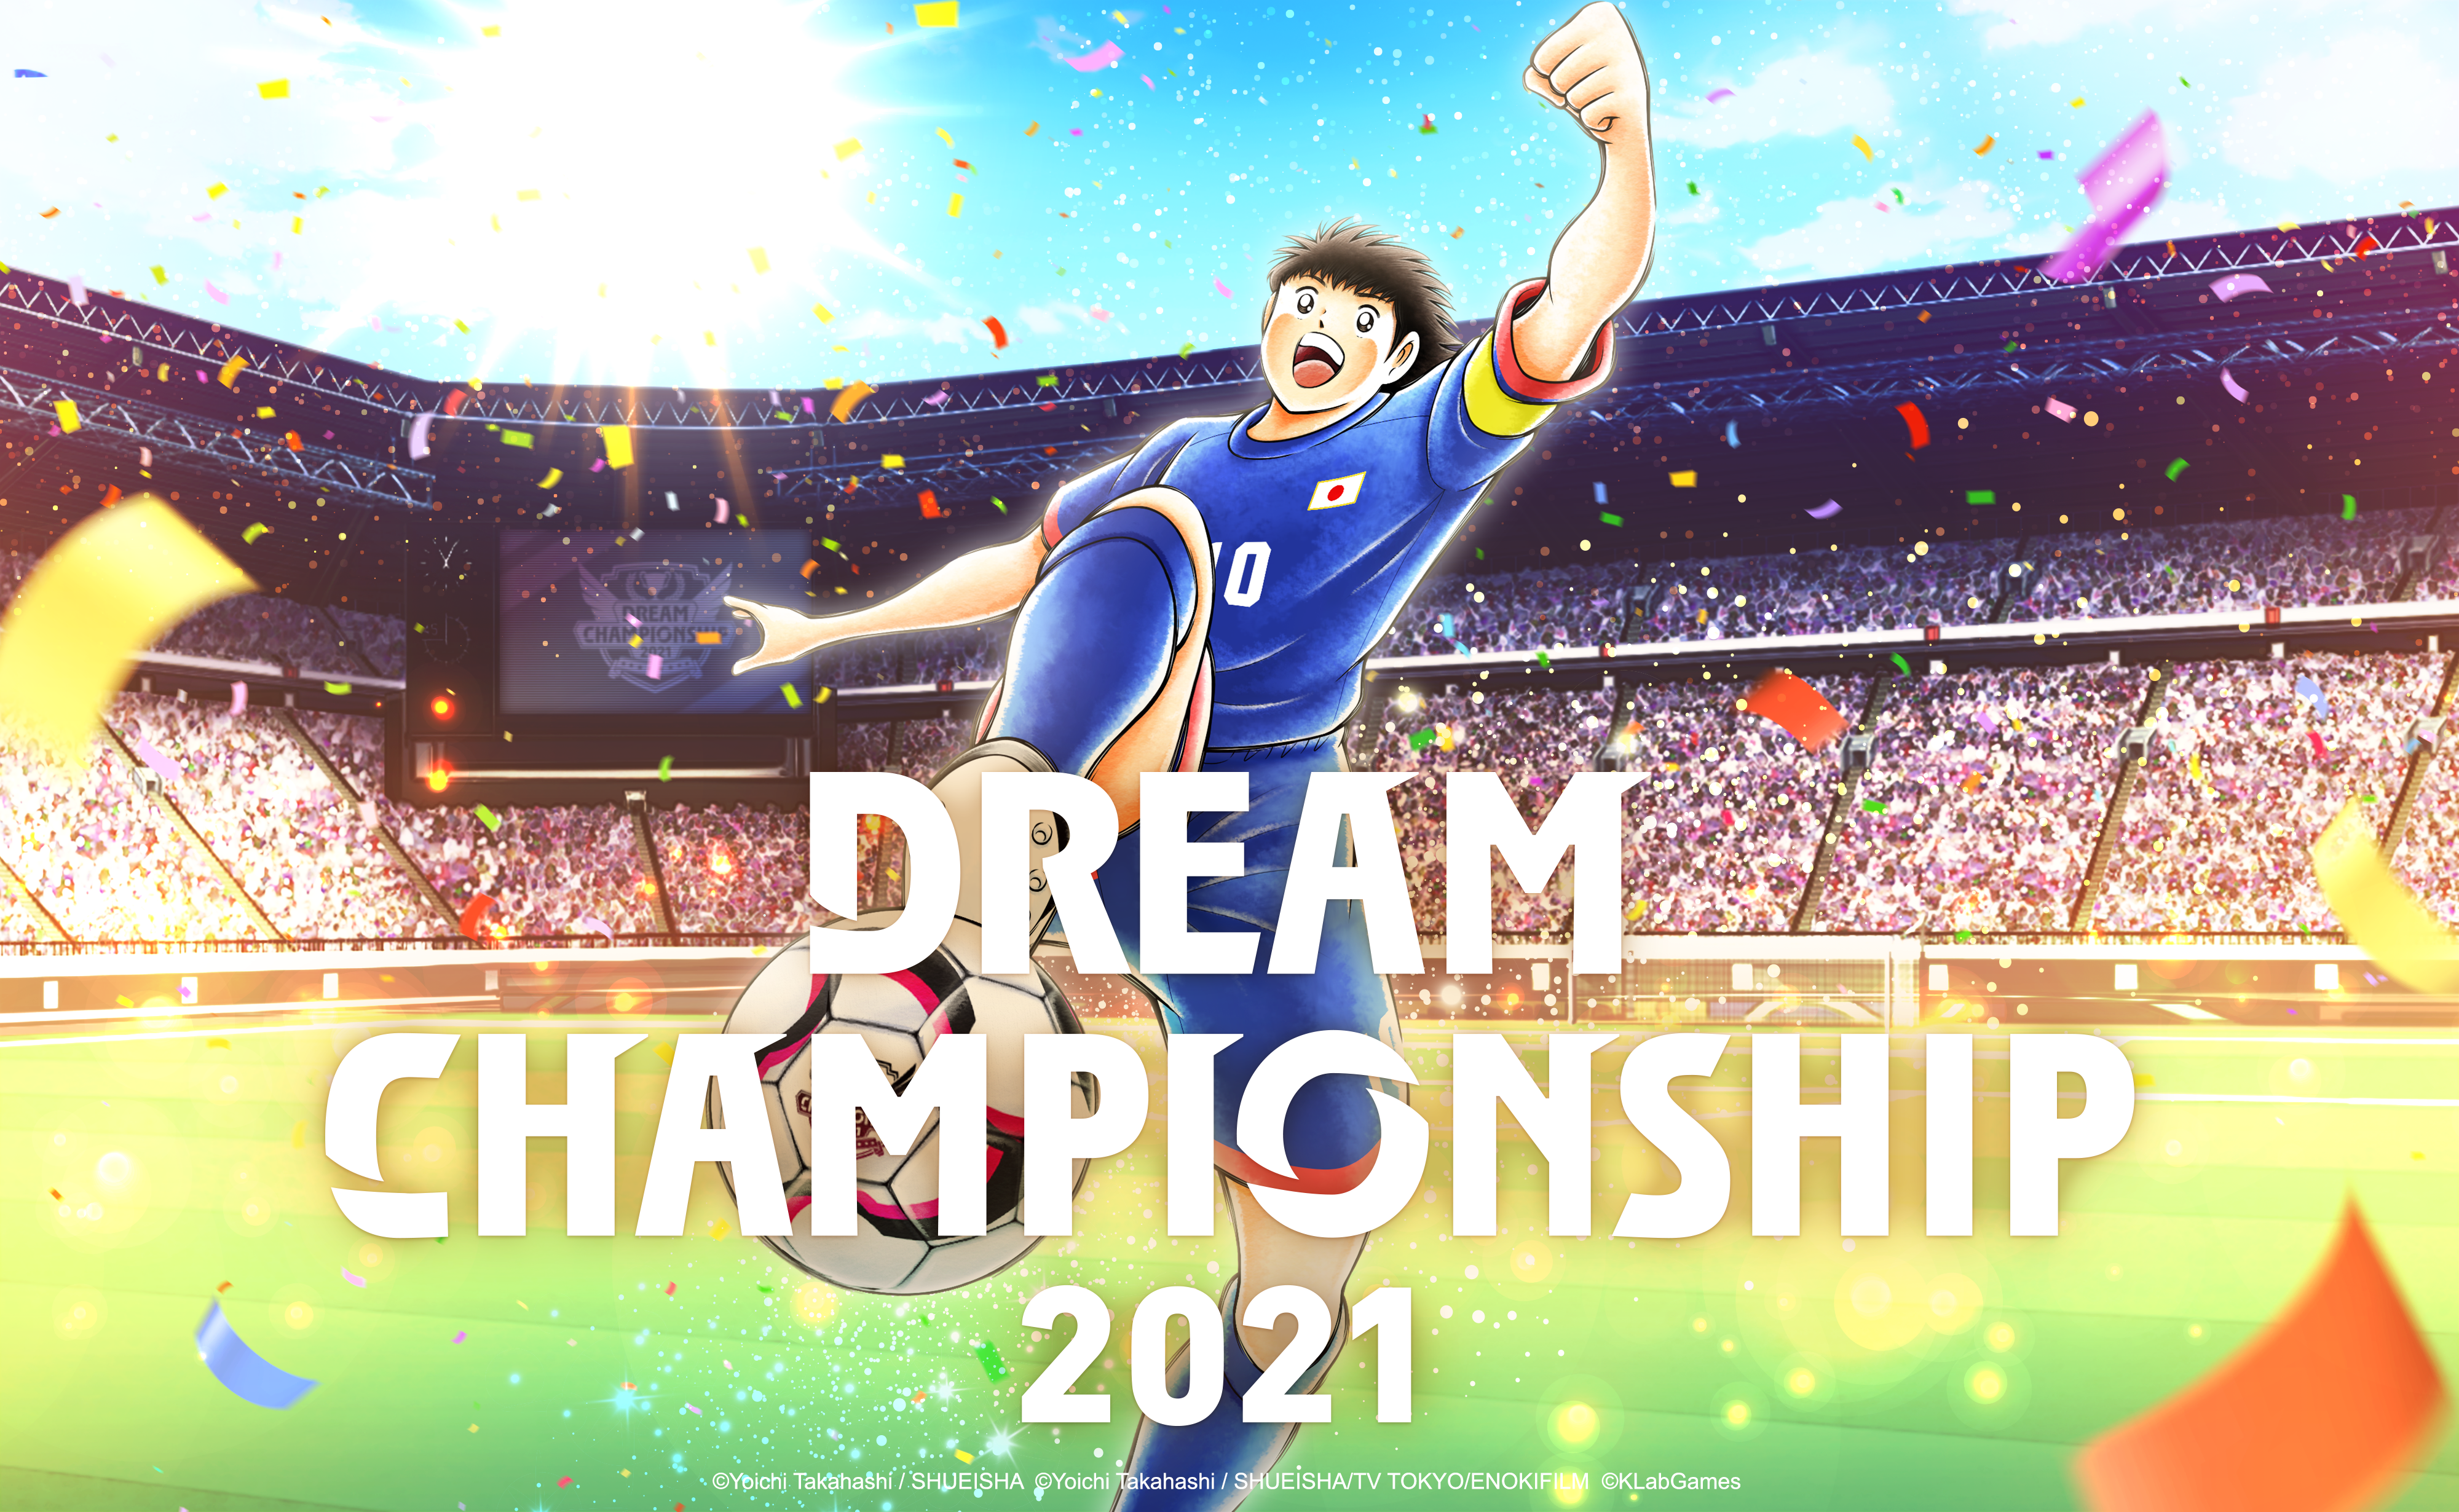 เกม “กัปตันซึบาสะ: ดรีมทีม (Captain Tsubasa: Dream Team)” เปิดรอบคัดเลือกผู้เข้าร่วมแข่งขันออนไลน์ทั่วโลก ดรีมแชมเปียนชิพ 2021 (Dream Championship 2021) แล้ววันนี้!